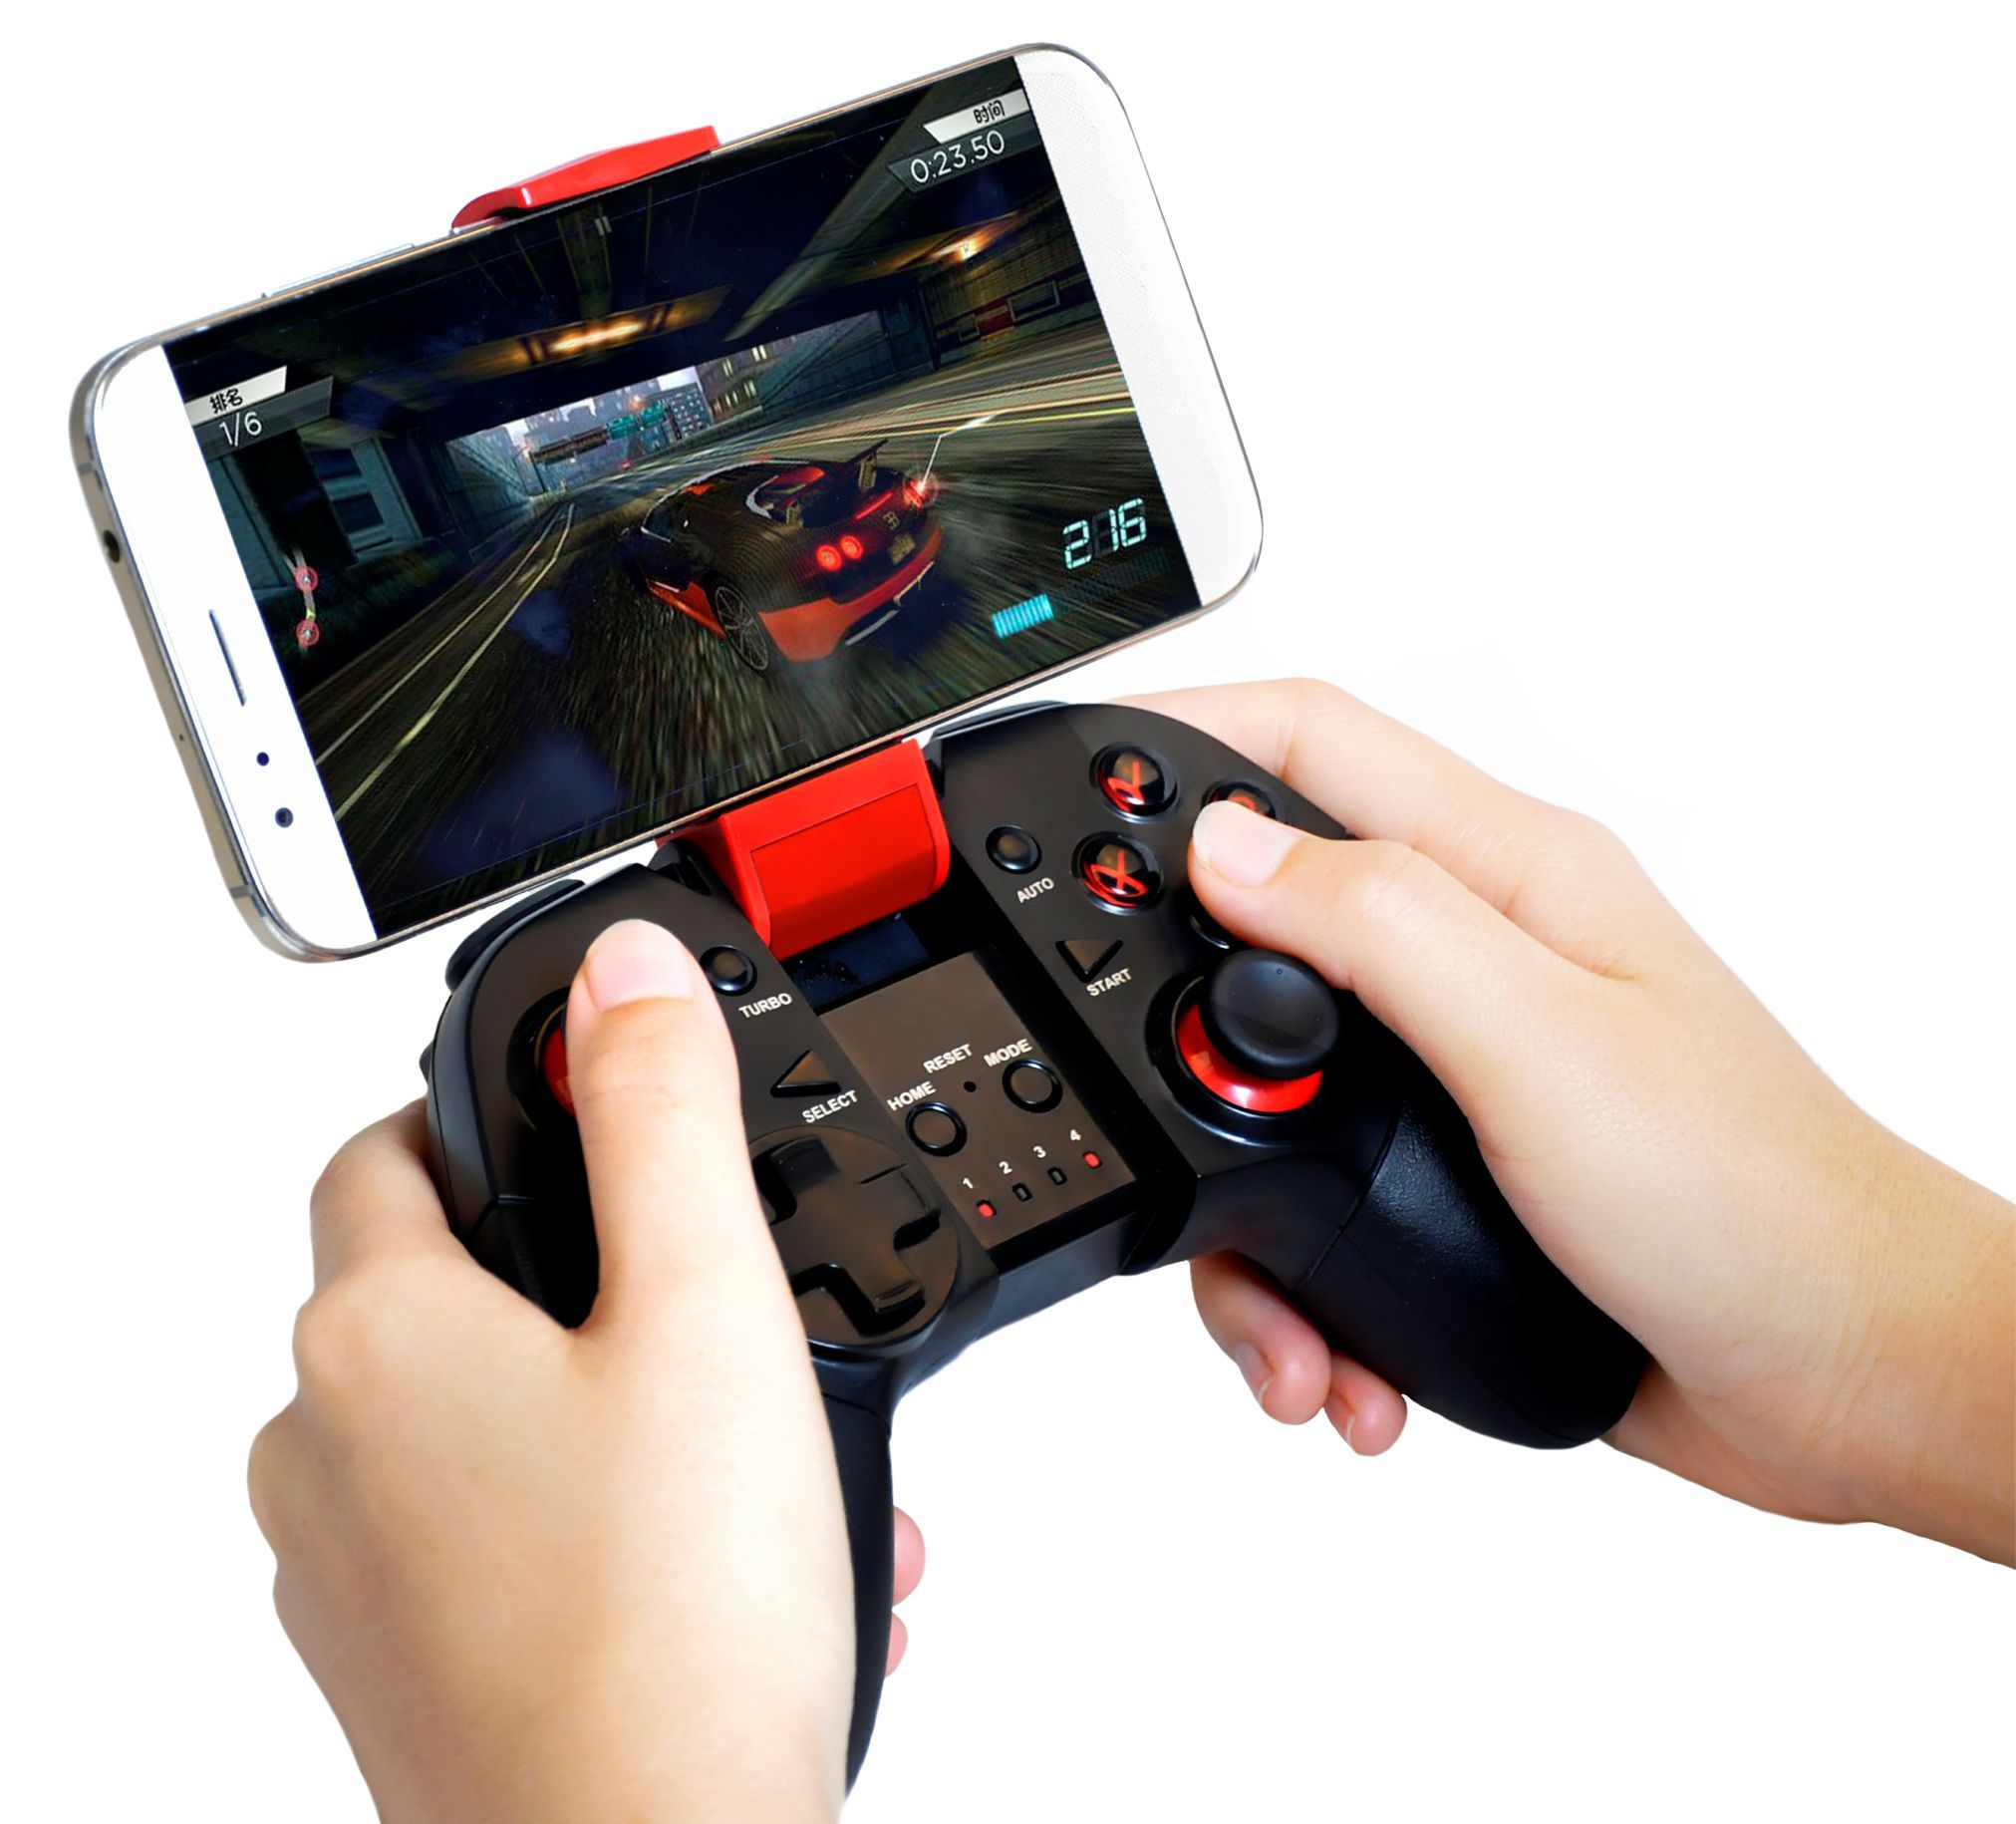 Nuevo Diseño Inalámbrico Bluetooth Gamepad Joystick Controlador Juegos Control Remoto Para Teléfono Celular Android 3.0 IOS 9.2.1 Retailpackage De 12,73 DHgate